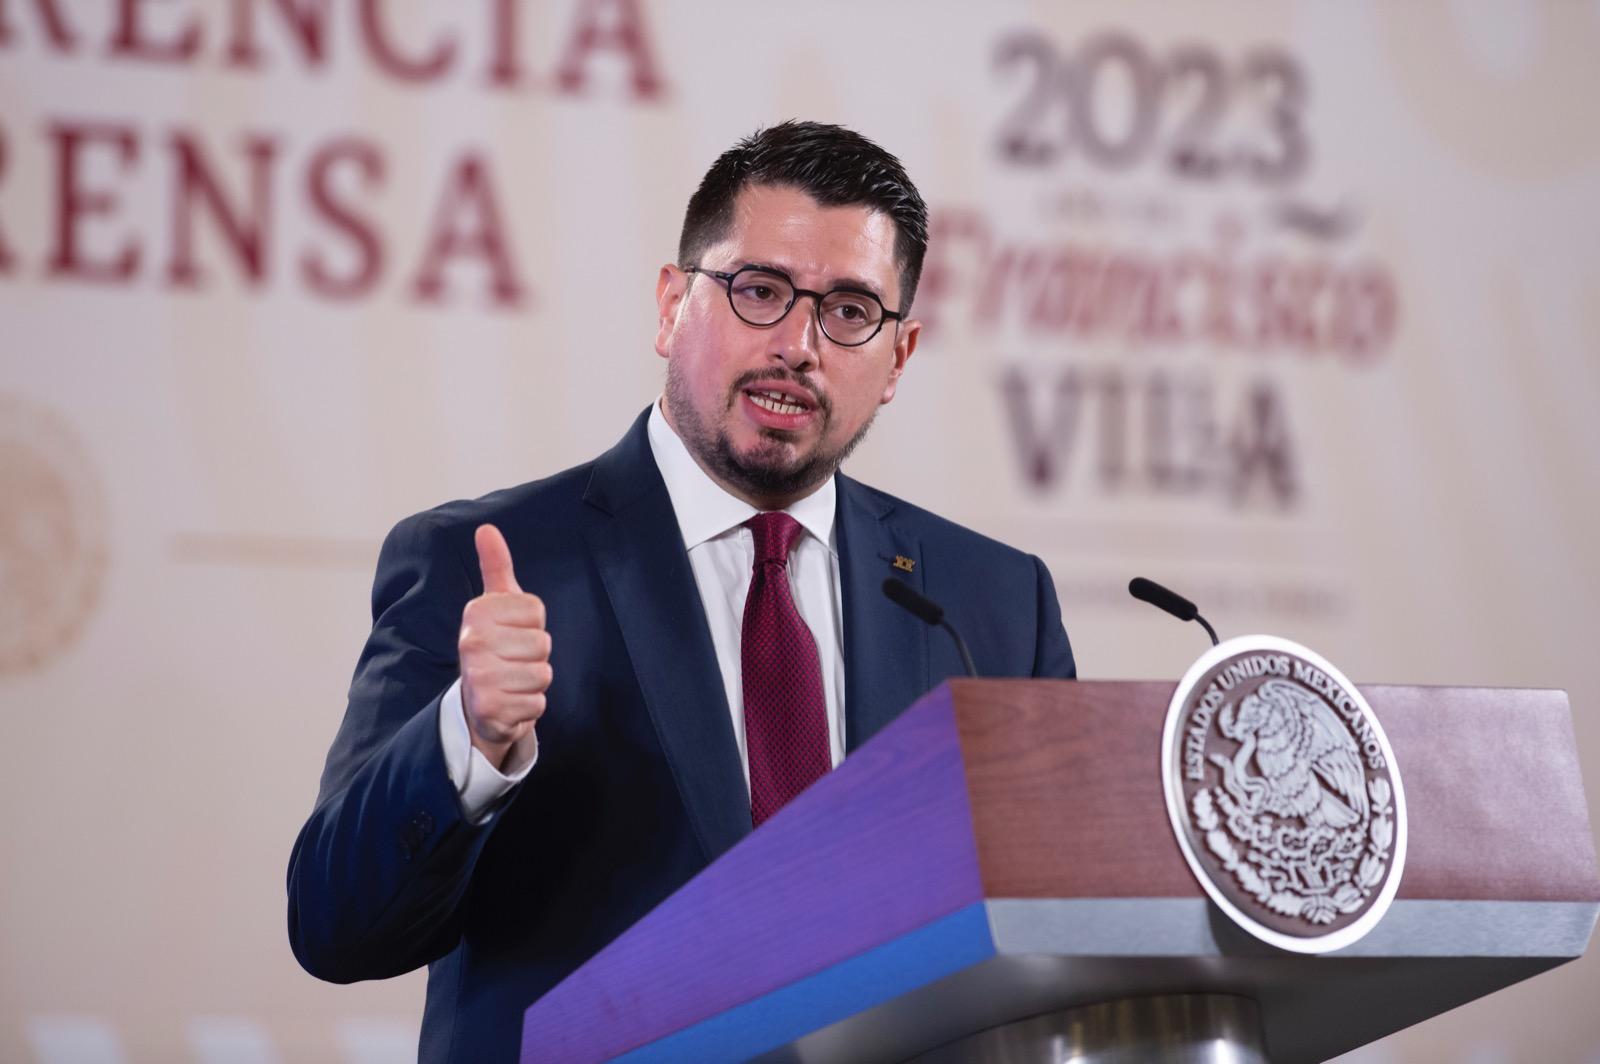 Carlos Martínez Velázquez / Presidencia de la República